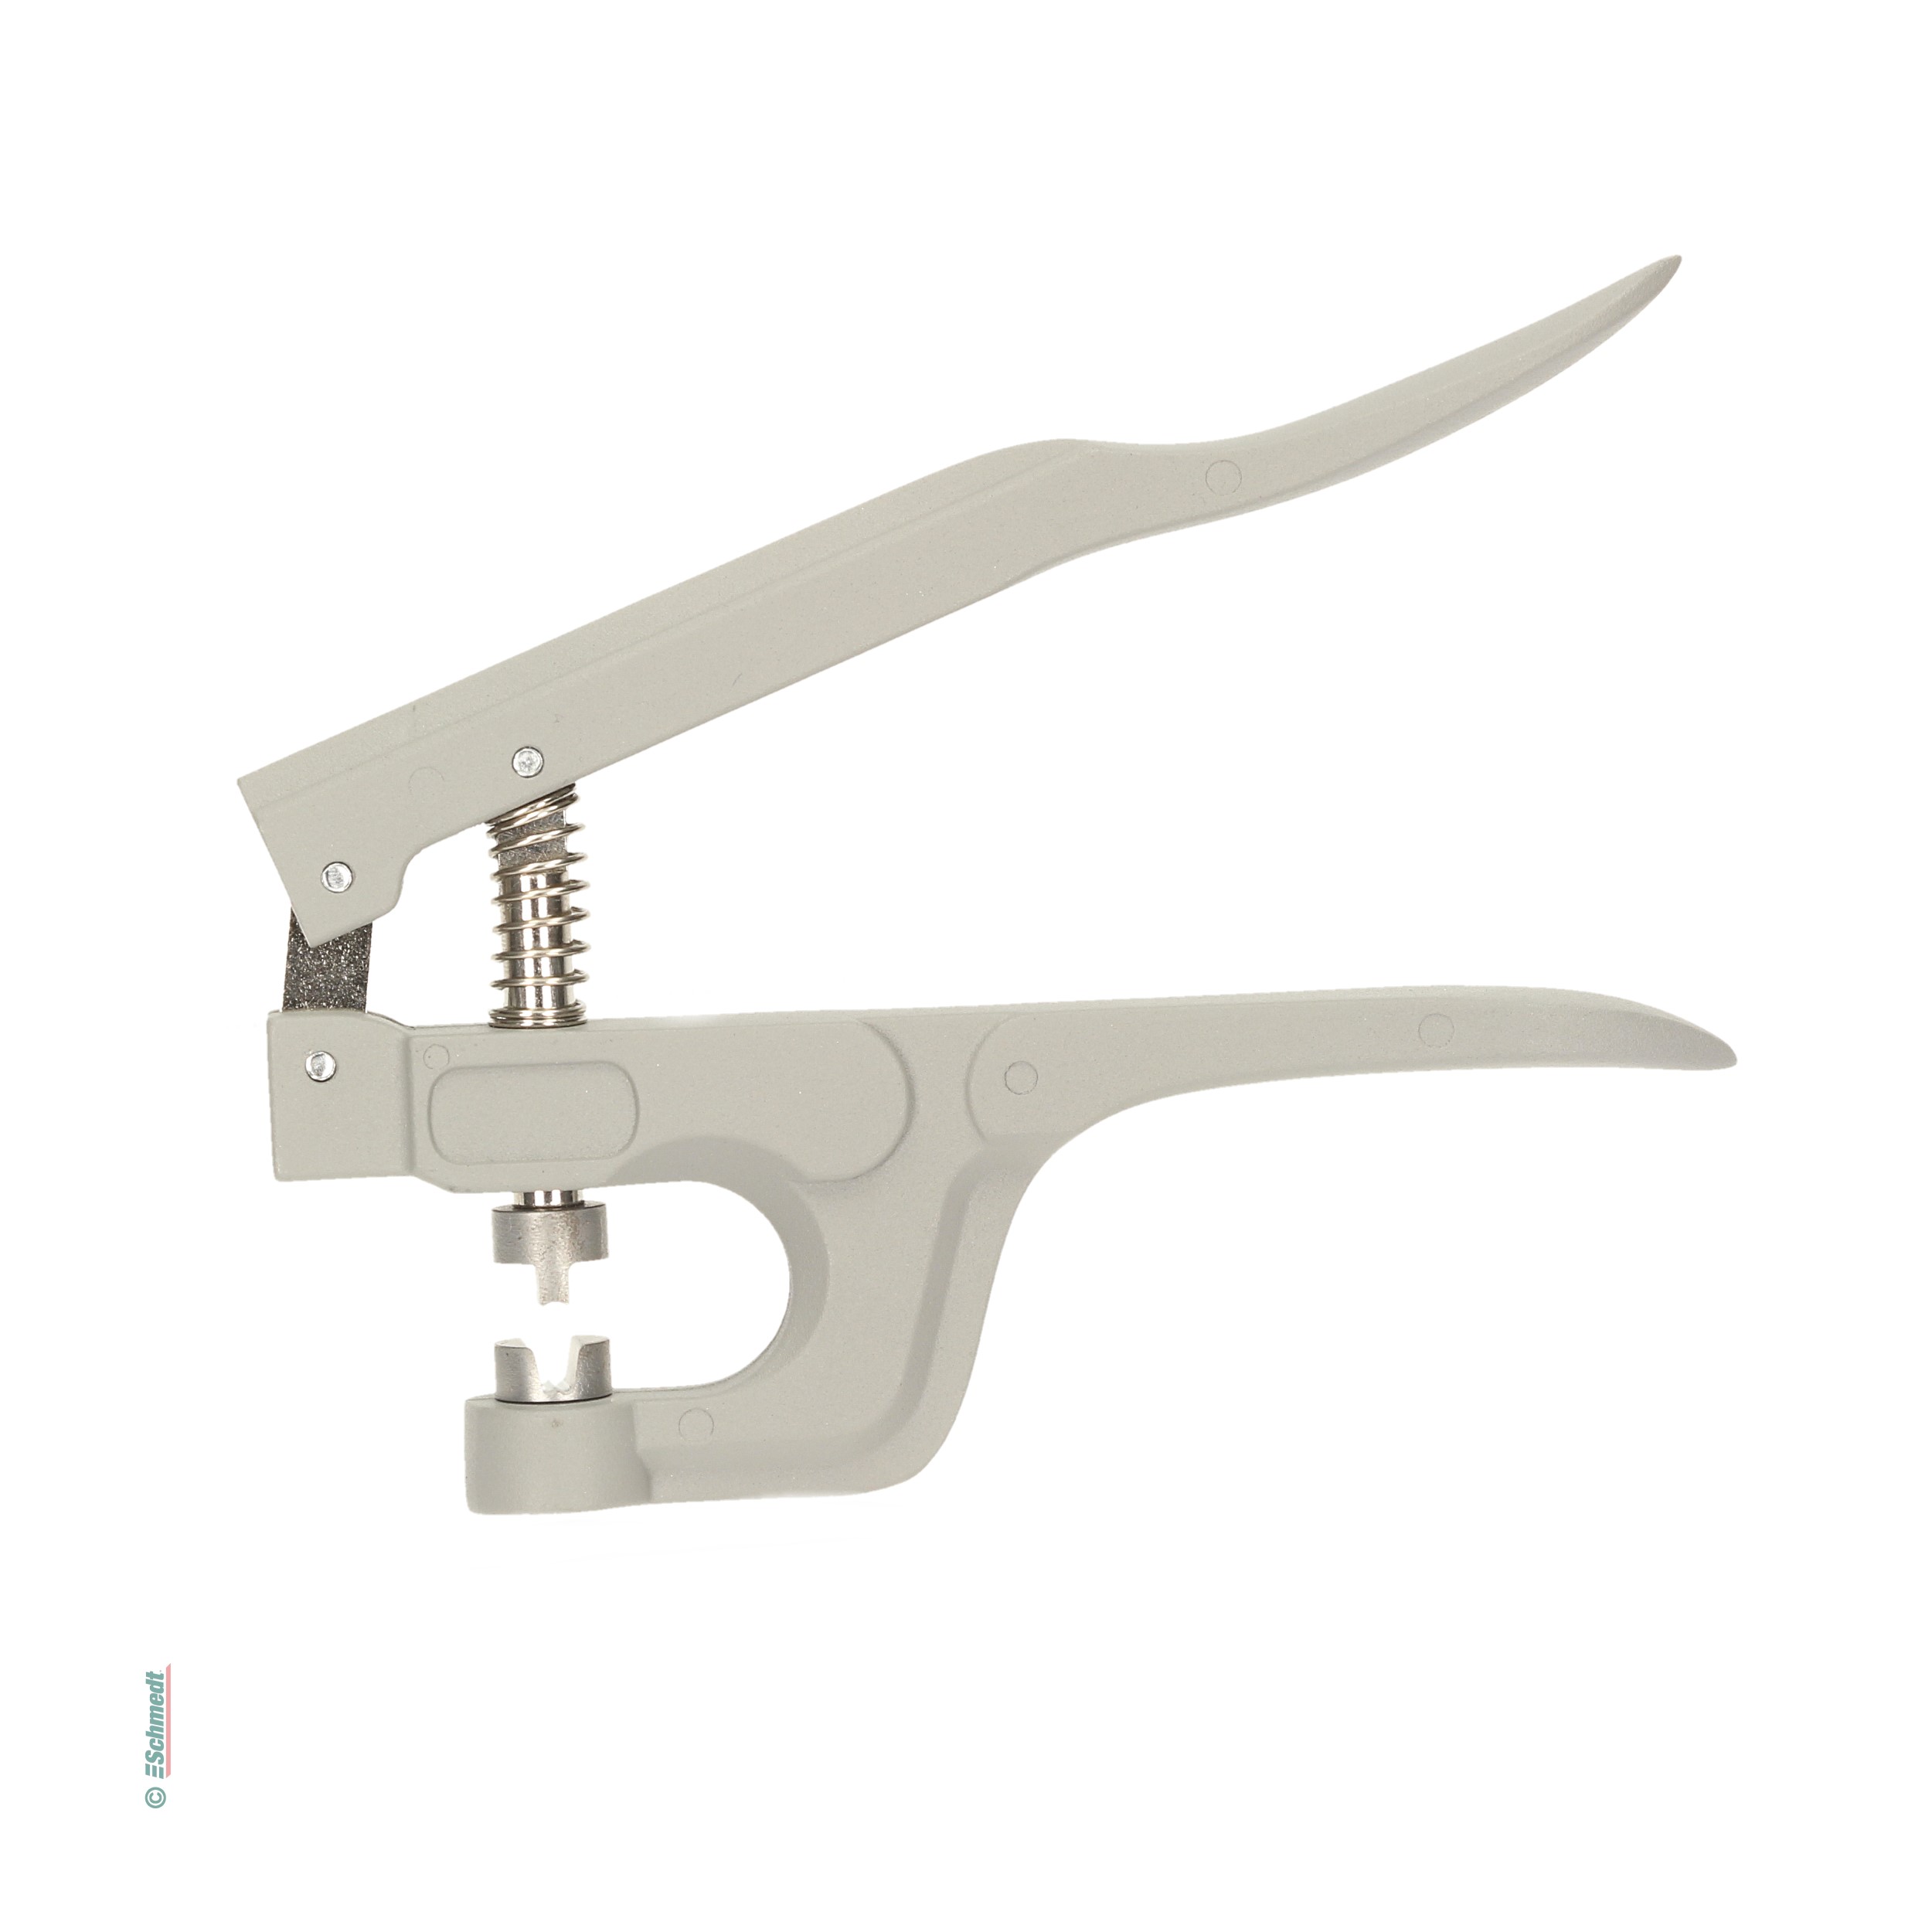 Zange für Metallsplinte - rollt die Splintflügel sauber nach innen um - Splintzange zum Schließen von T-Splinten und Rundgummiclips...